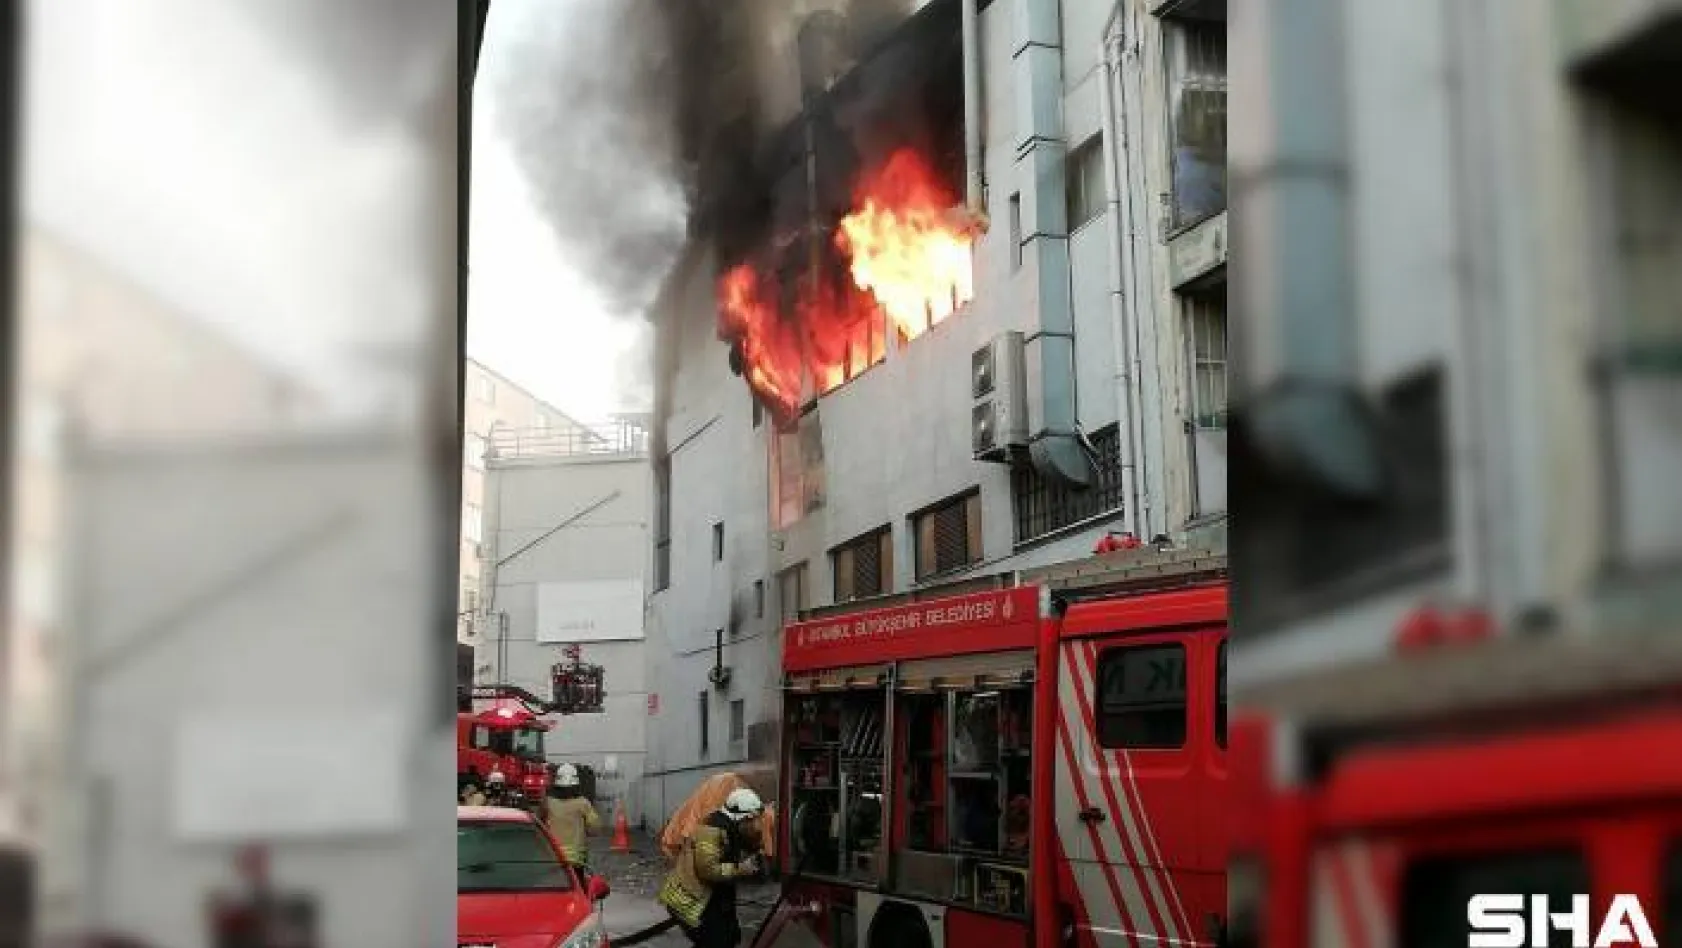 Kağıthane'de 4 katlı iş merkezinde yangın çıktı. Olay yerine çok sayıda itfaiye ekibi sevk edildi, ekiplerin yangına müdahalesi devam ediyor